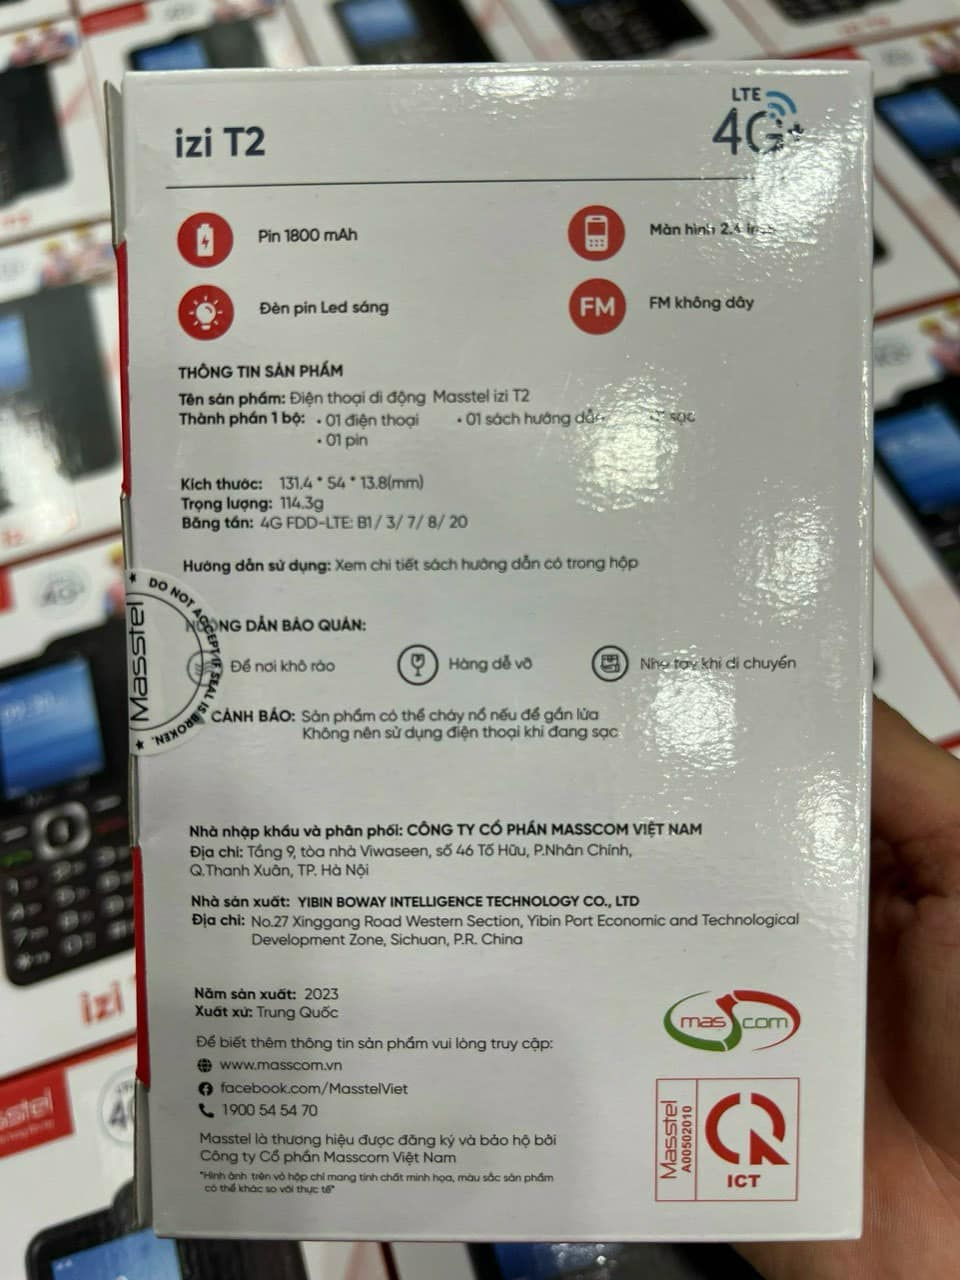 Hình ảnh Điện thoại Masstel izi T2 4G(LTE), Màn hình 2.4 inch, Đèn pin siêu sáng, Loa to - Hàng chính hãng